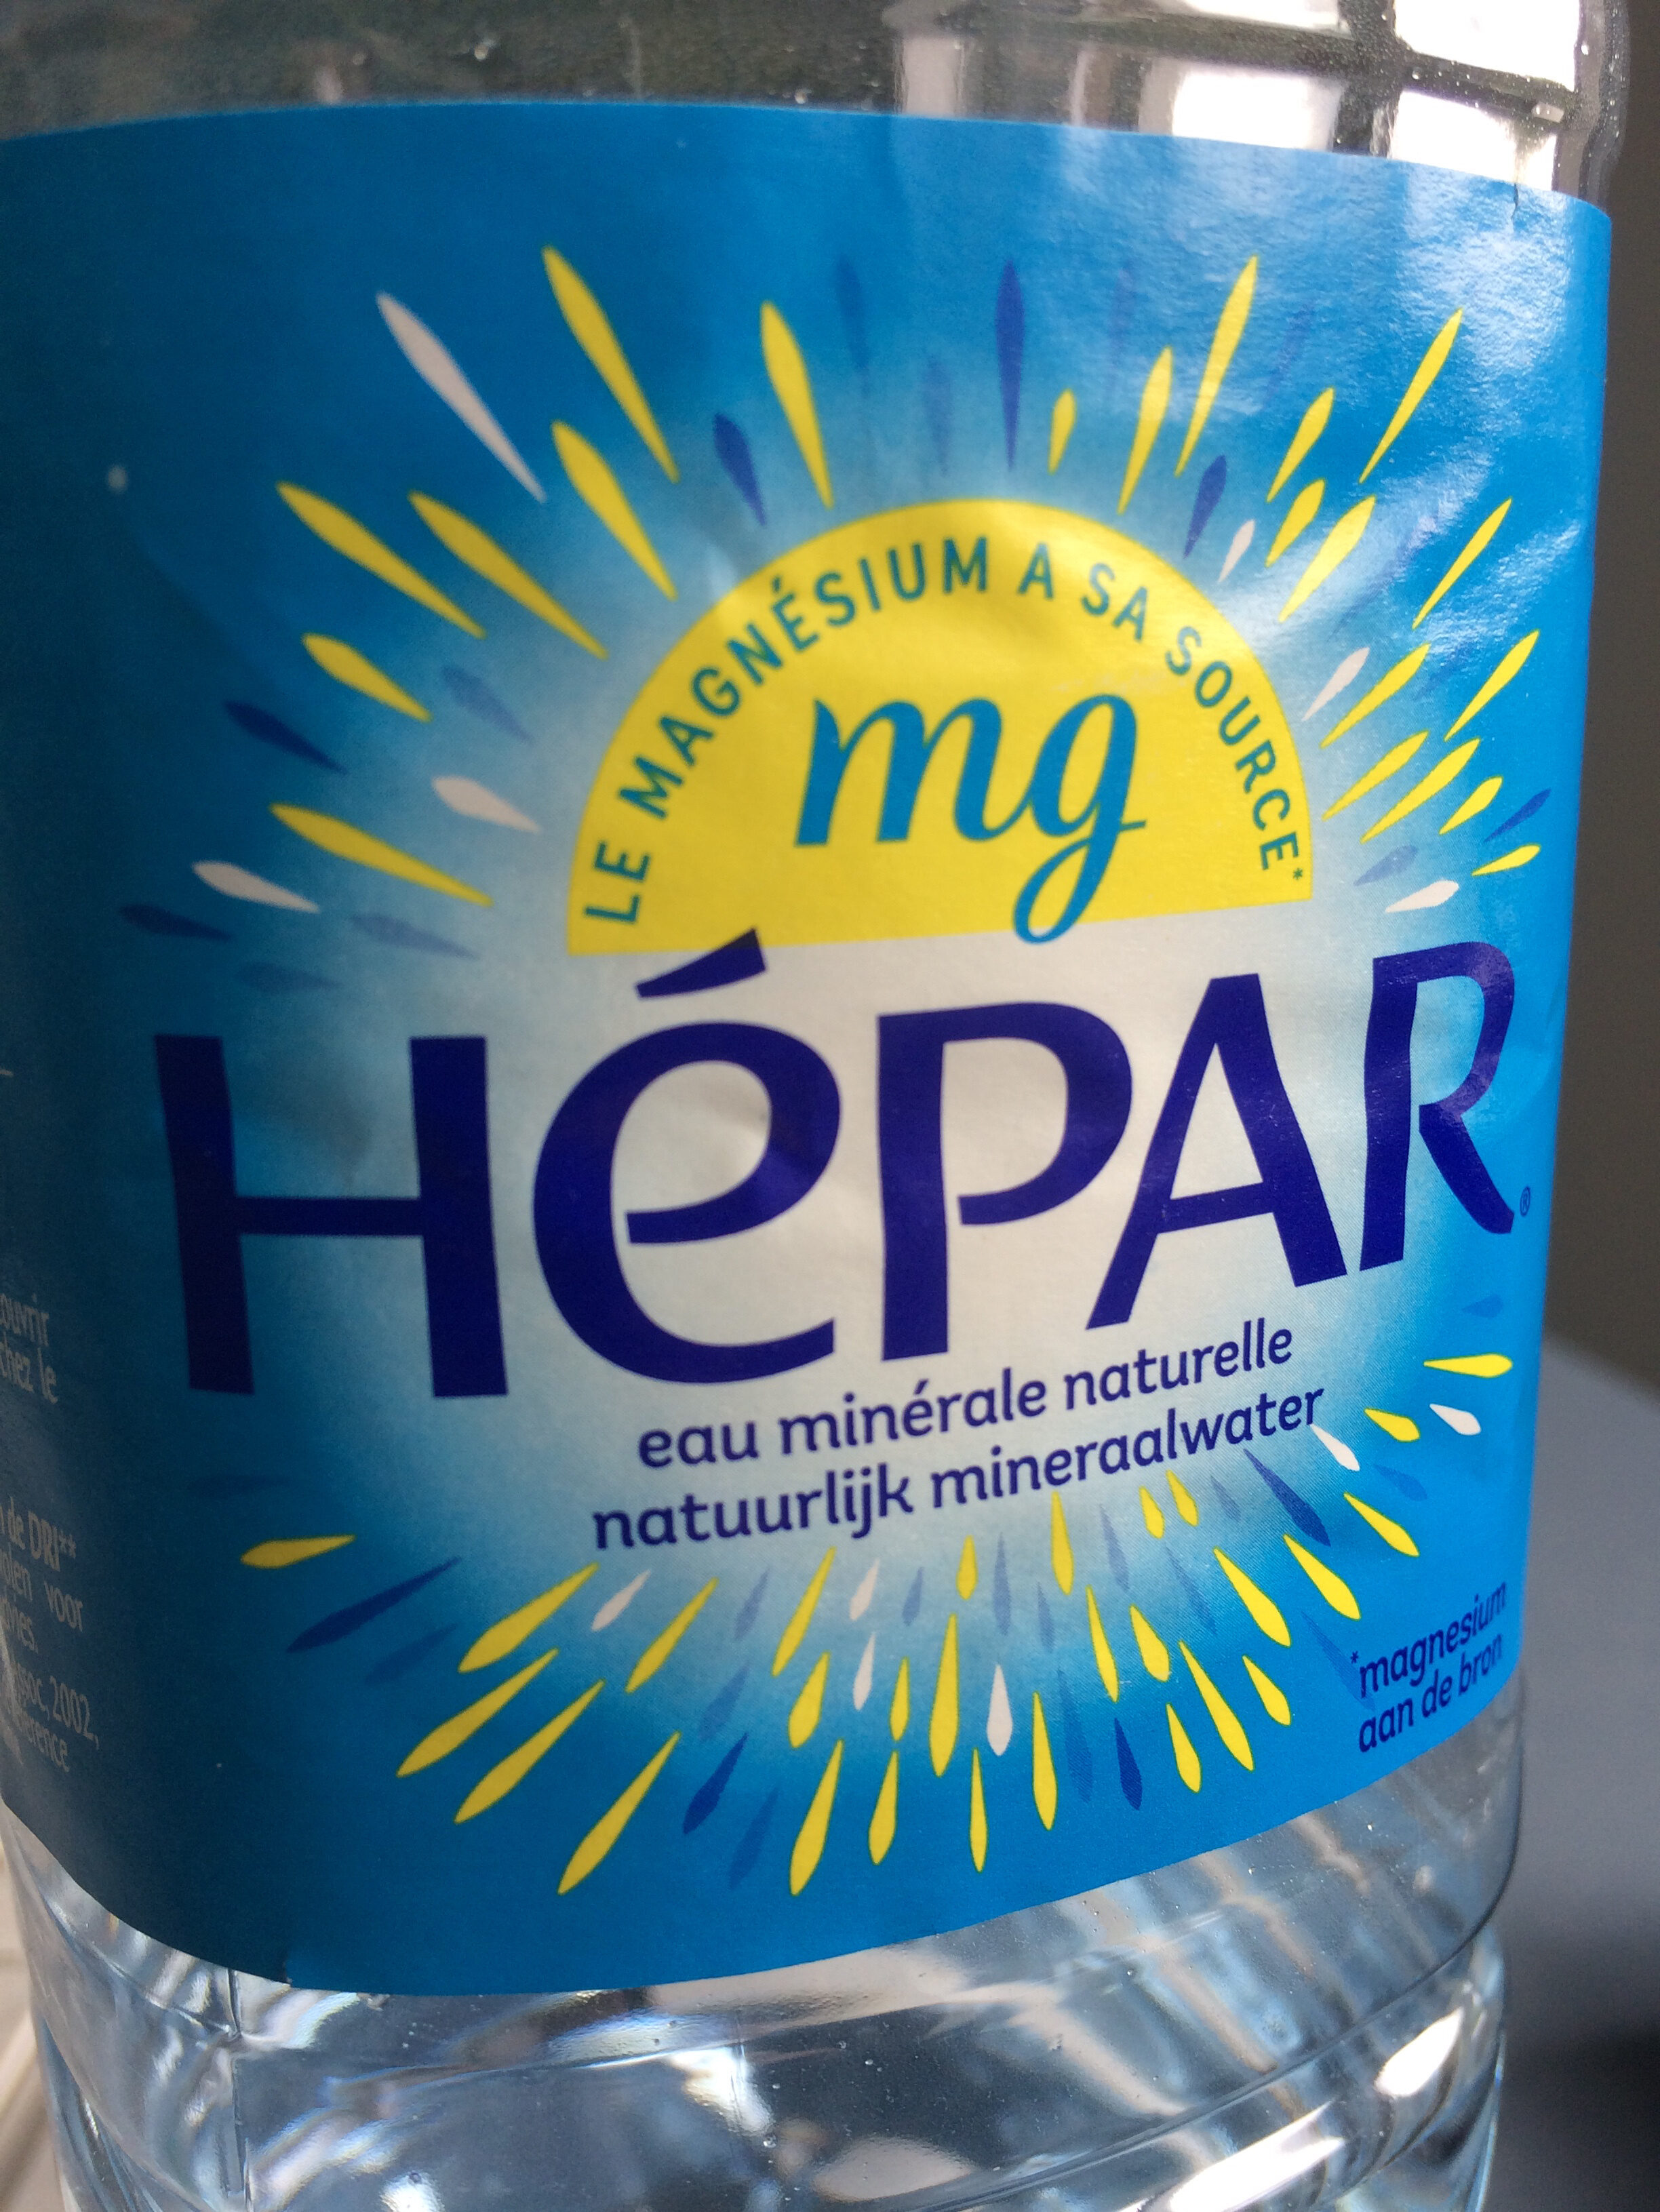 HEPAR eau minérale naturelle - Ingrédients - fr